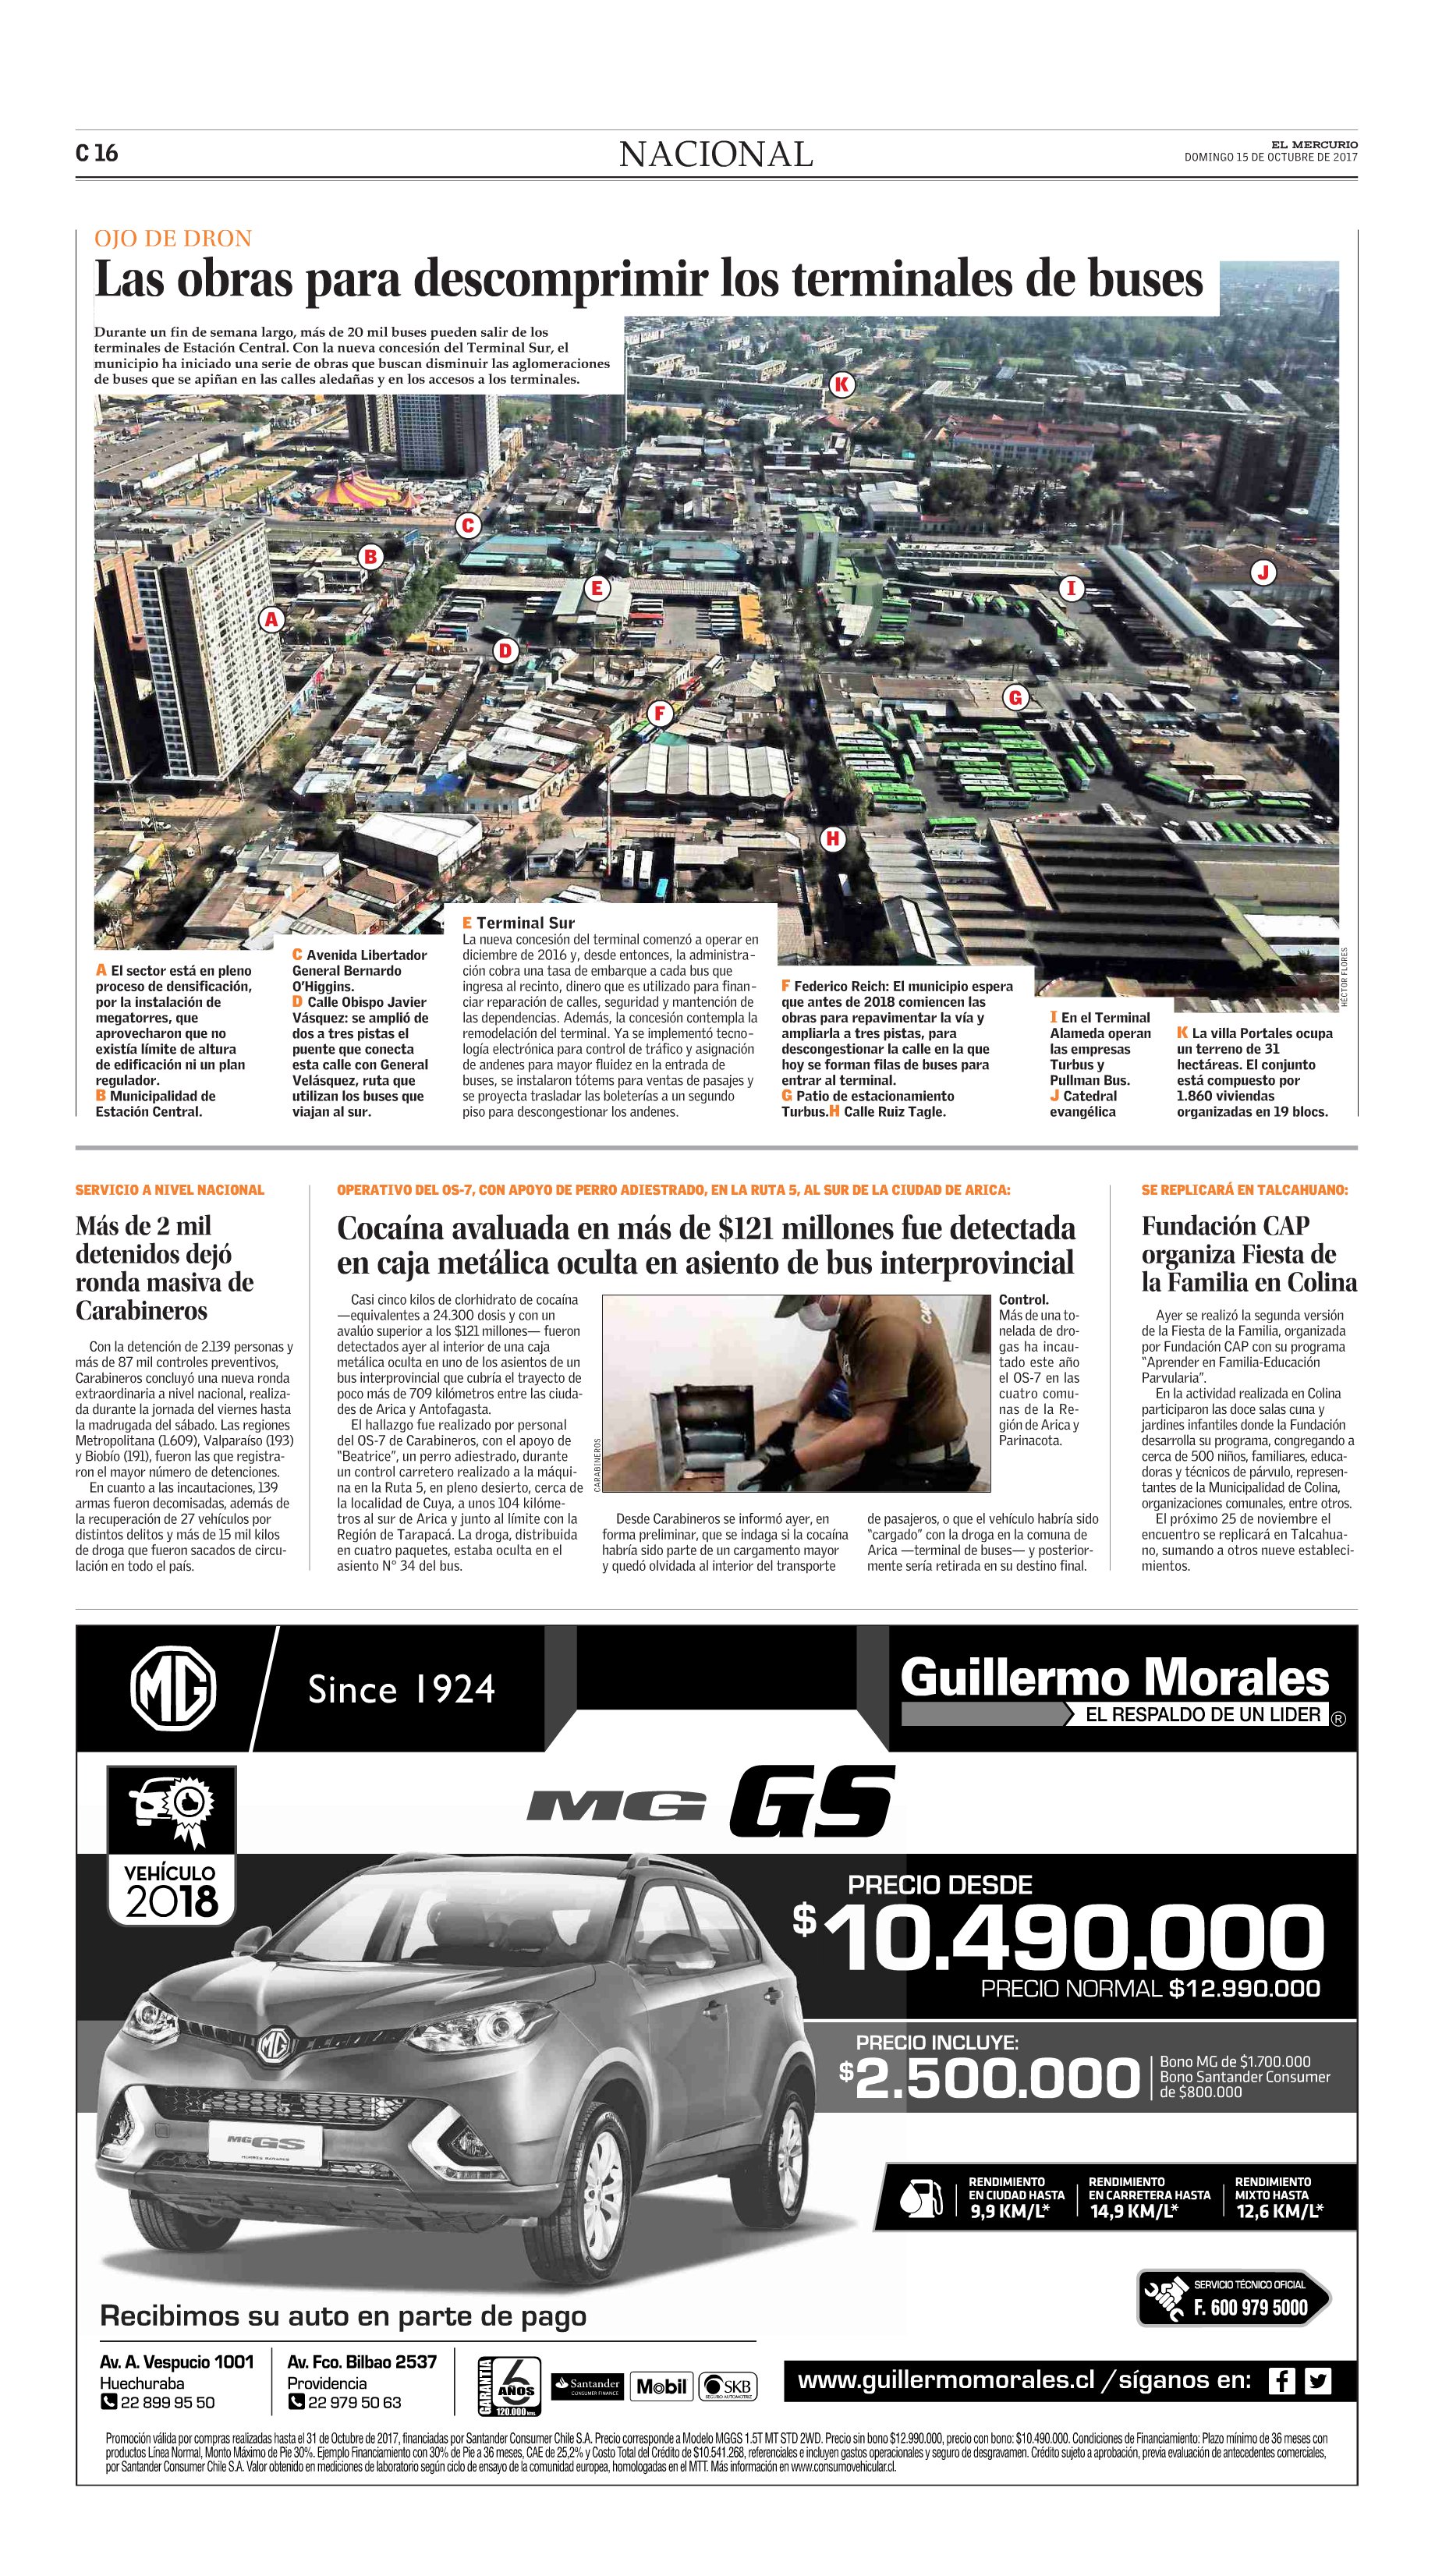 El Mercurio, Nacional, lunes 17 de octubre de 2017